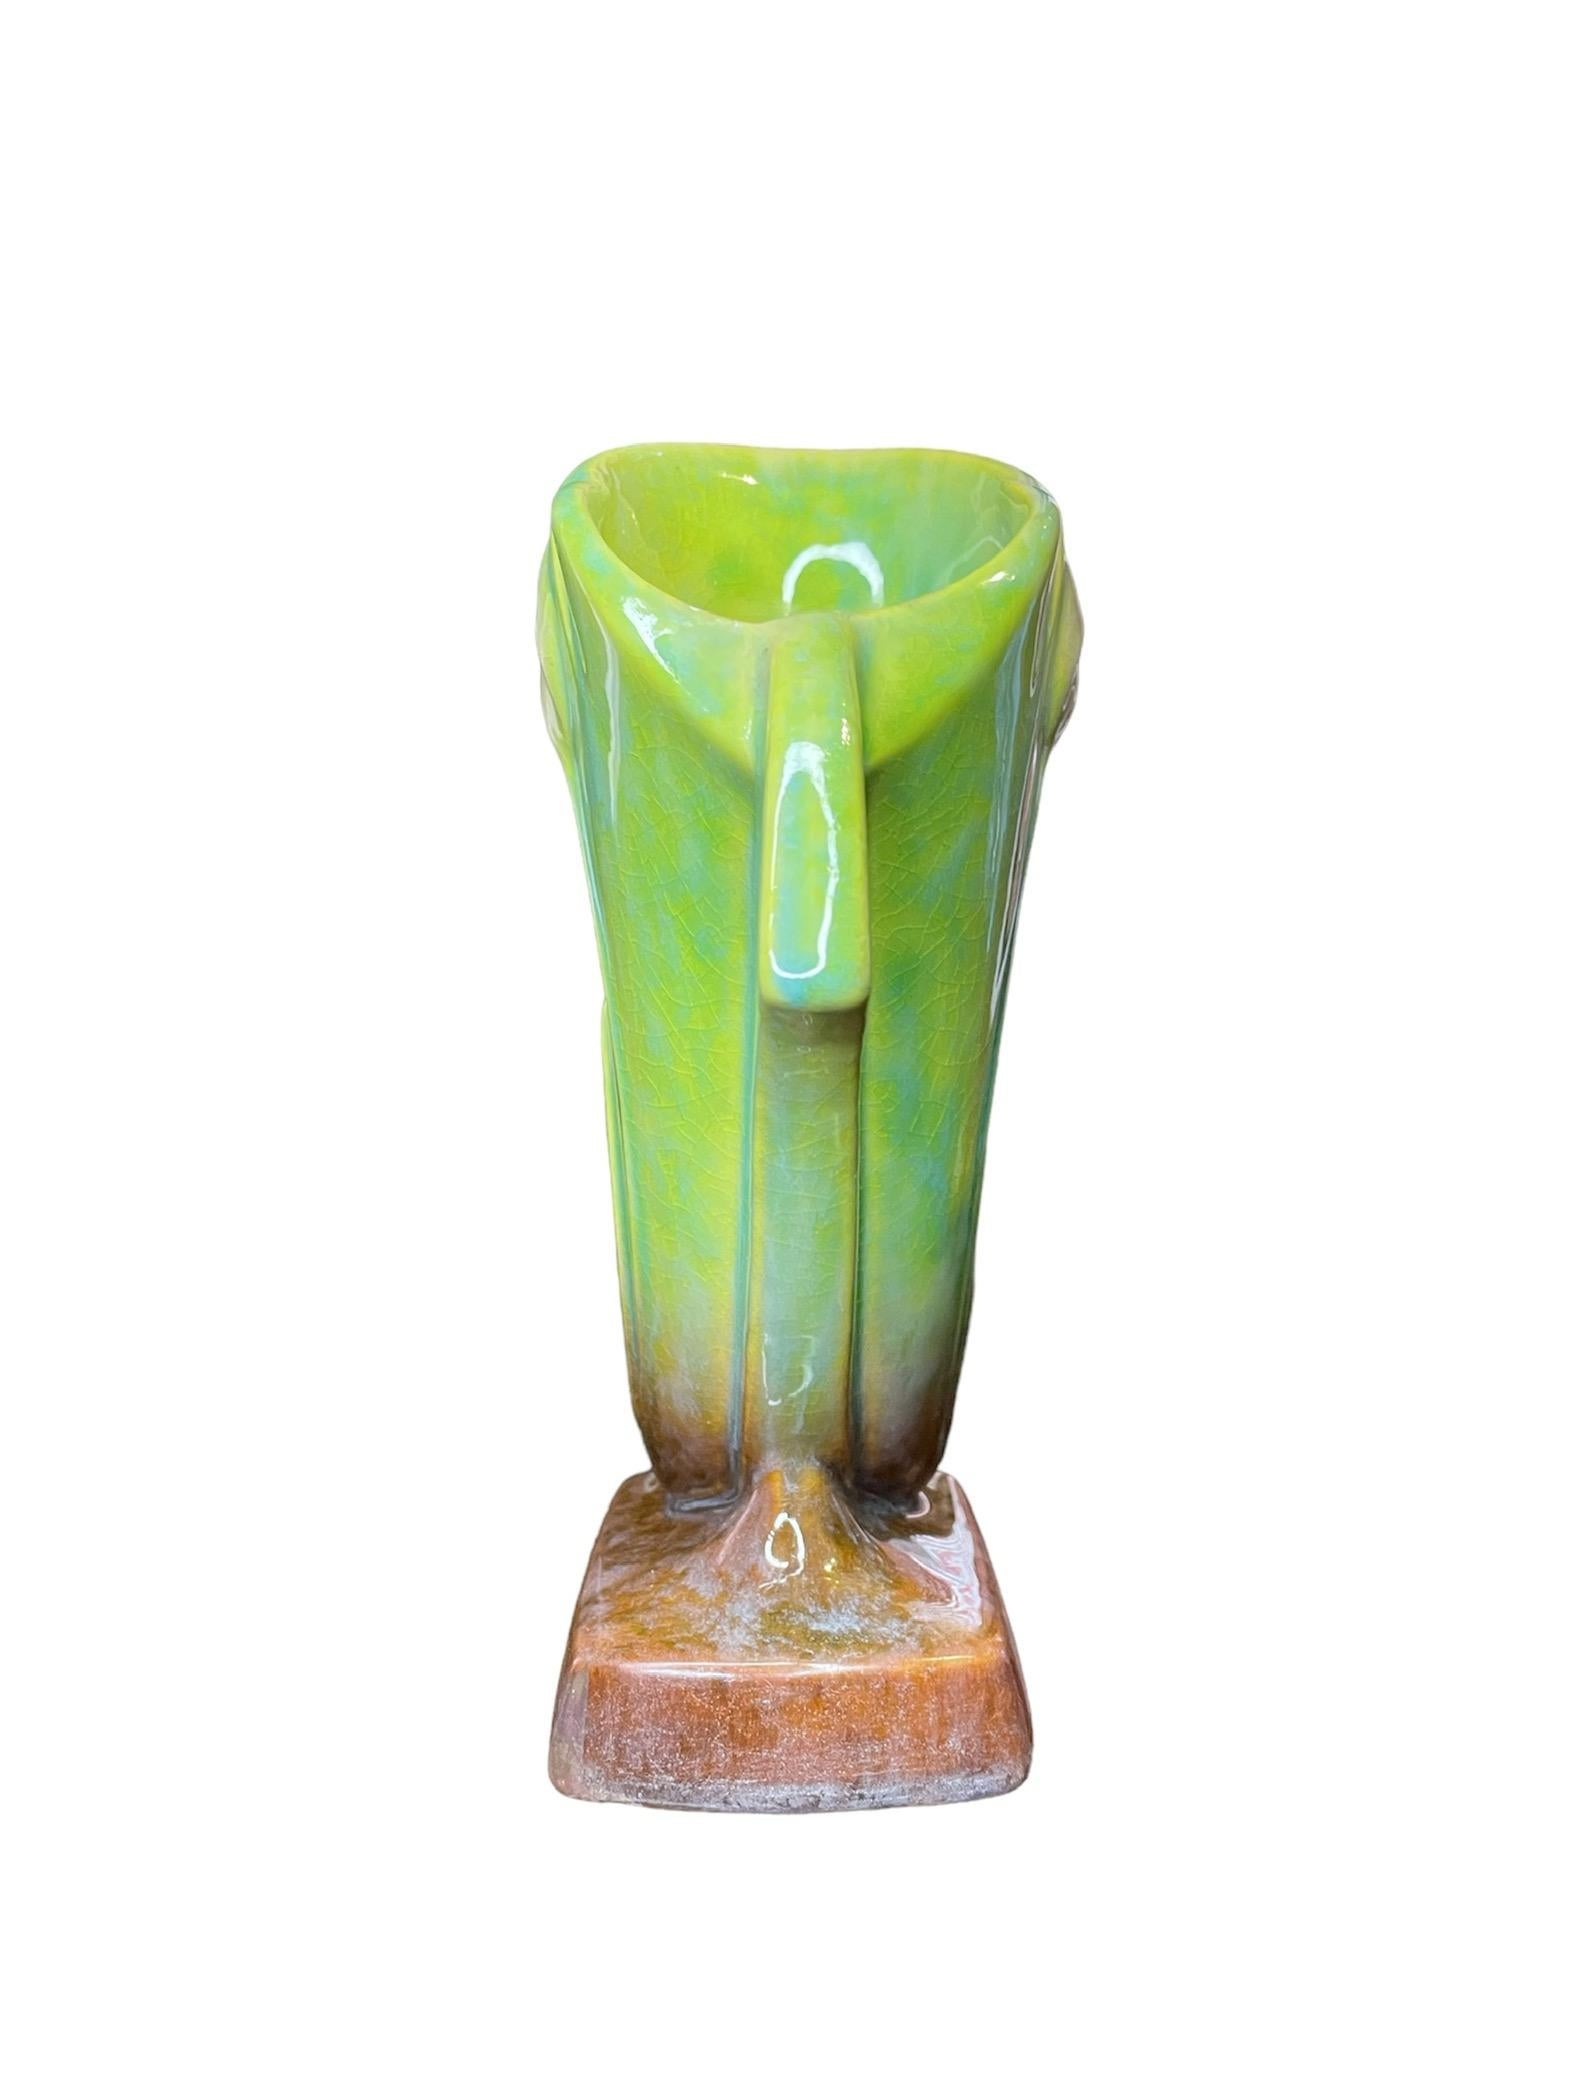 Repoussé Roseville Art Pottery Wincraft Tulip Flower Vase